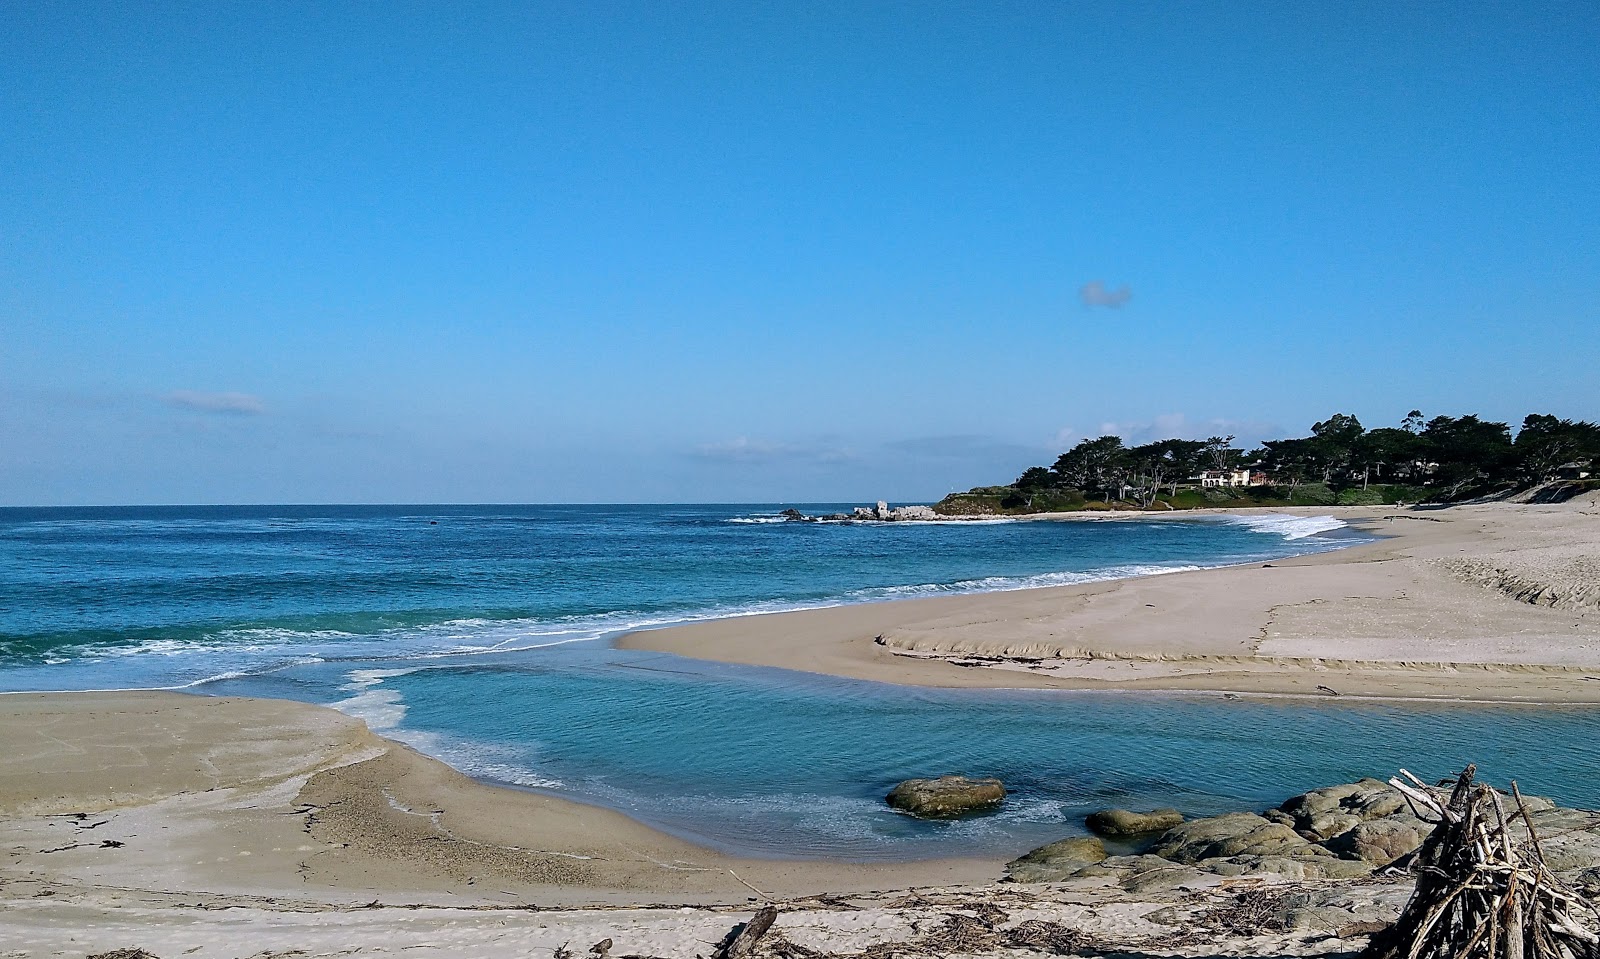 Fotografie cu Carmel River Beach - locul popular printre cunoscătorii de relaxare